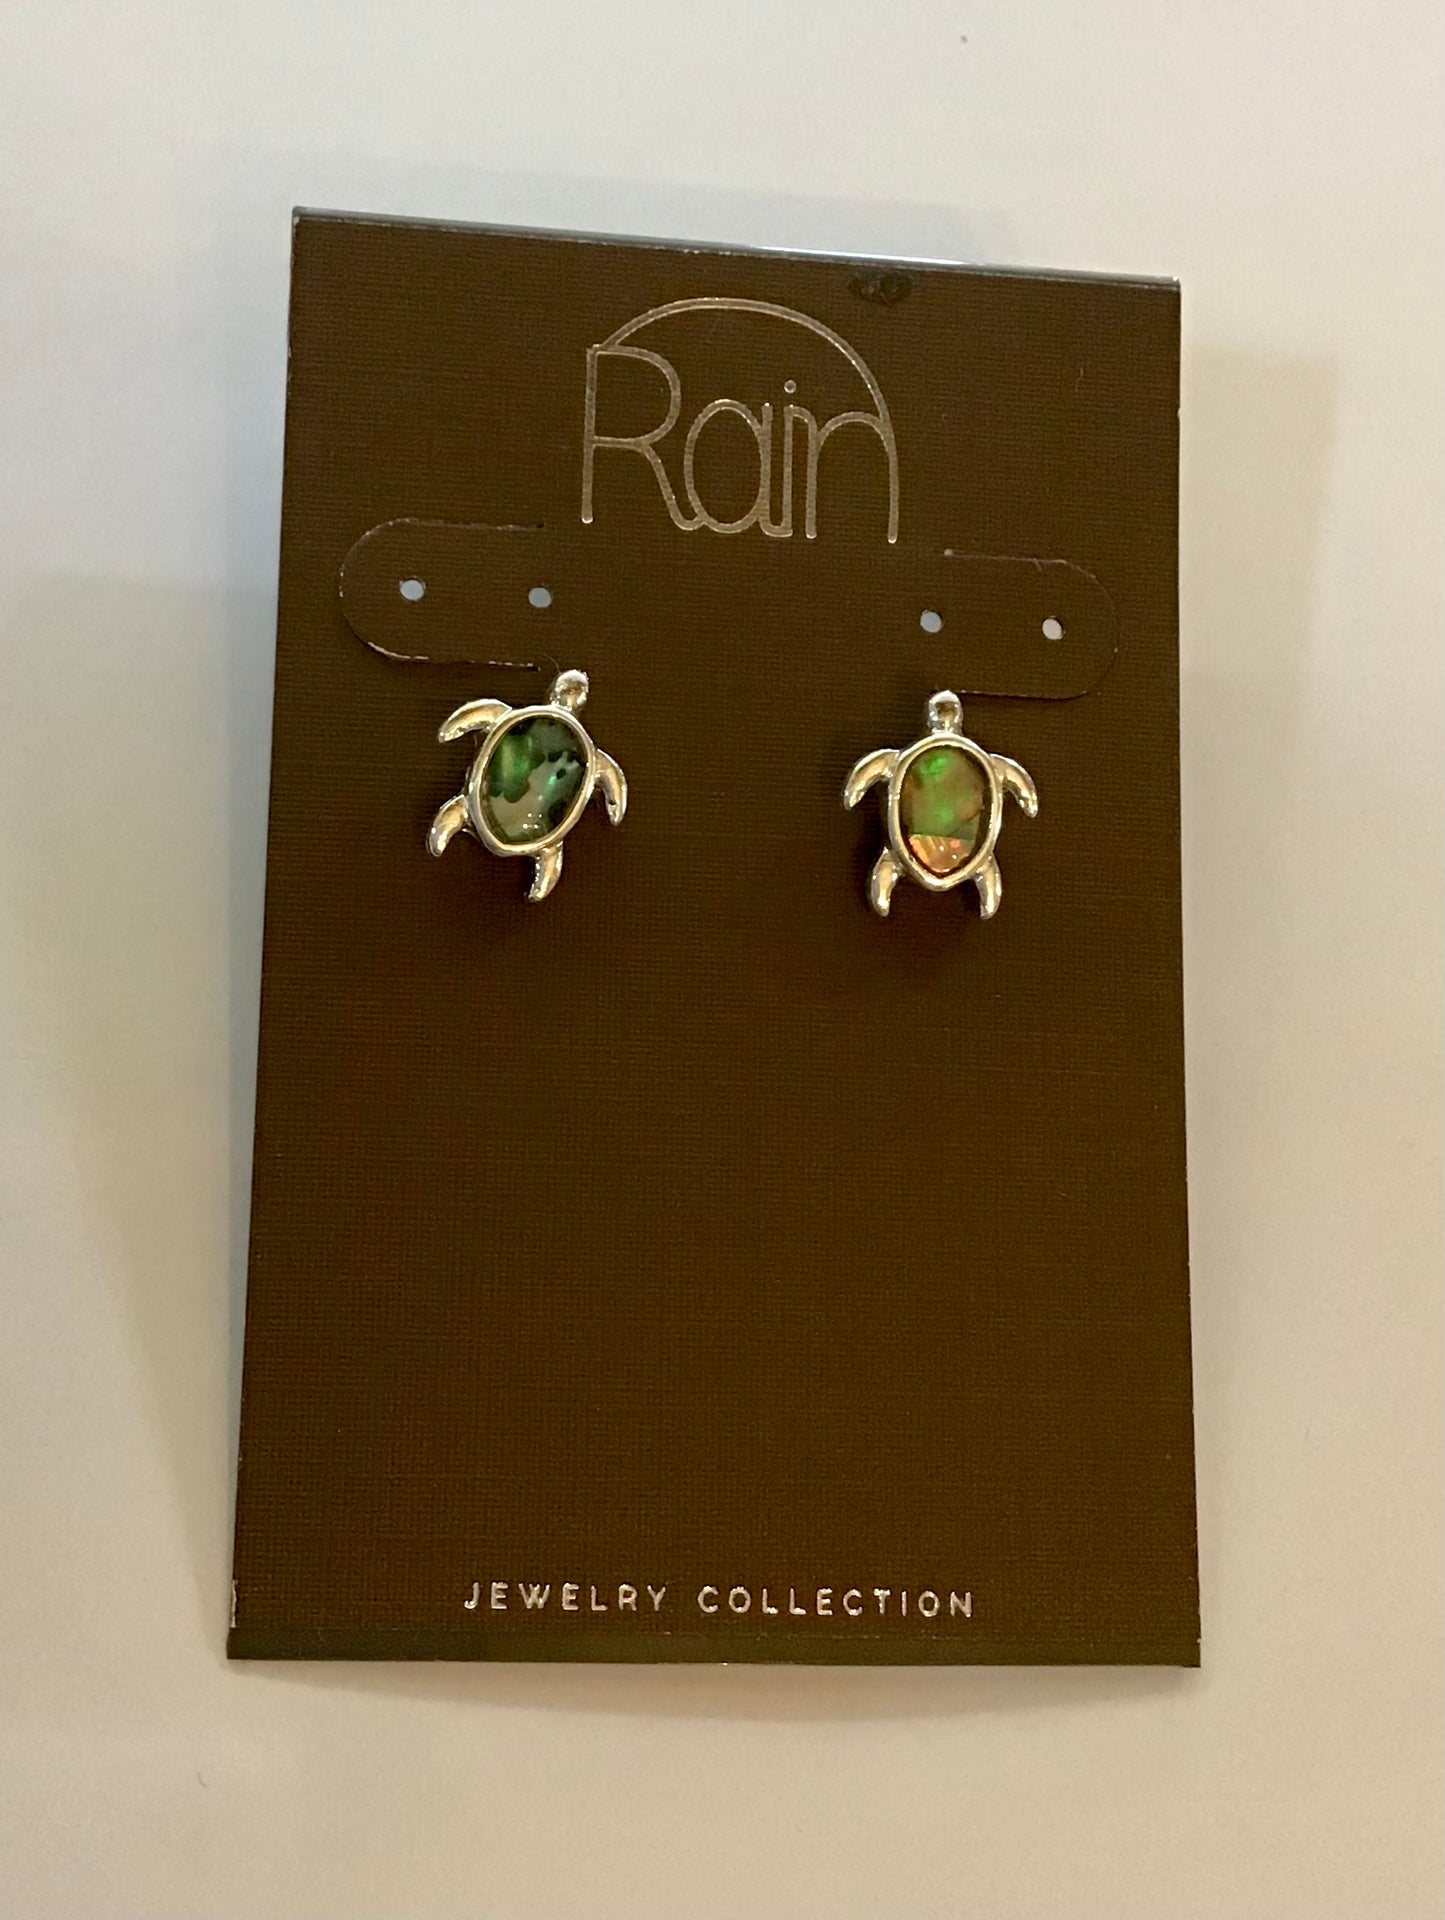 Rain Jewelry Collection Earrings PIERCED